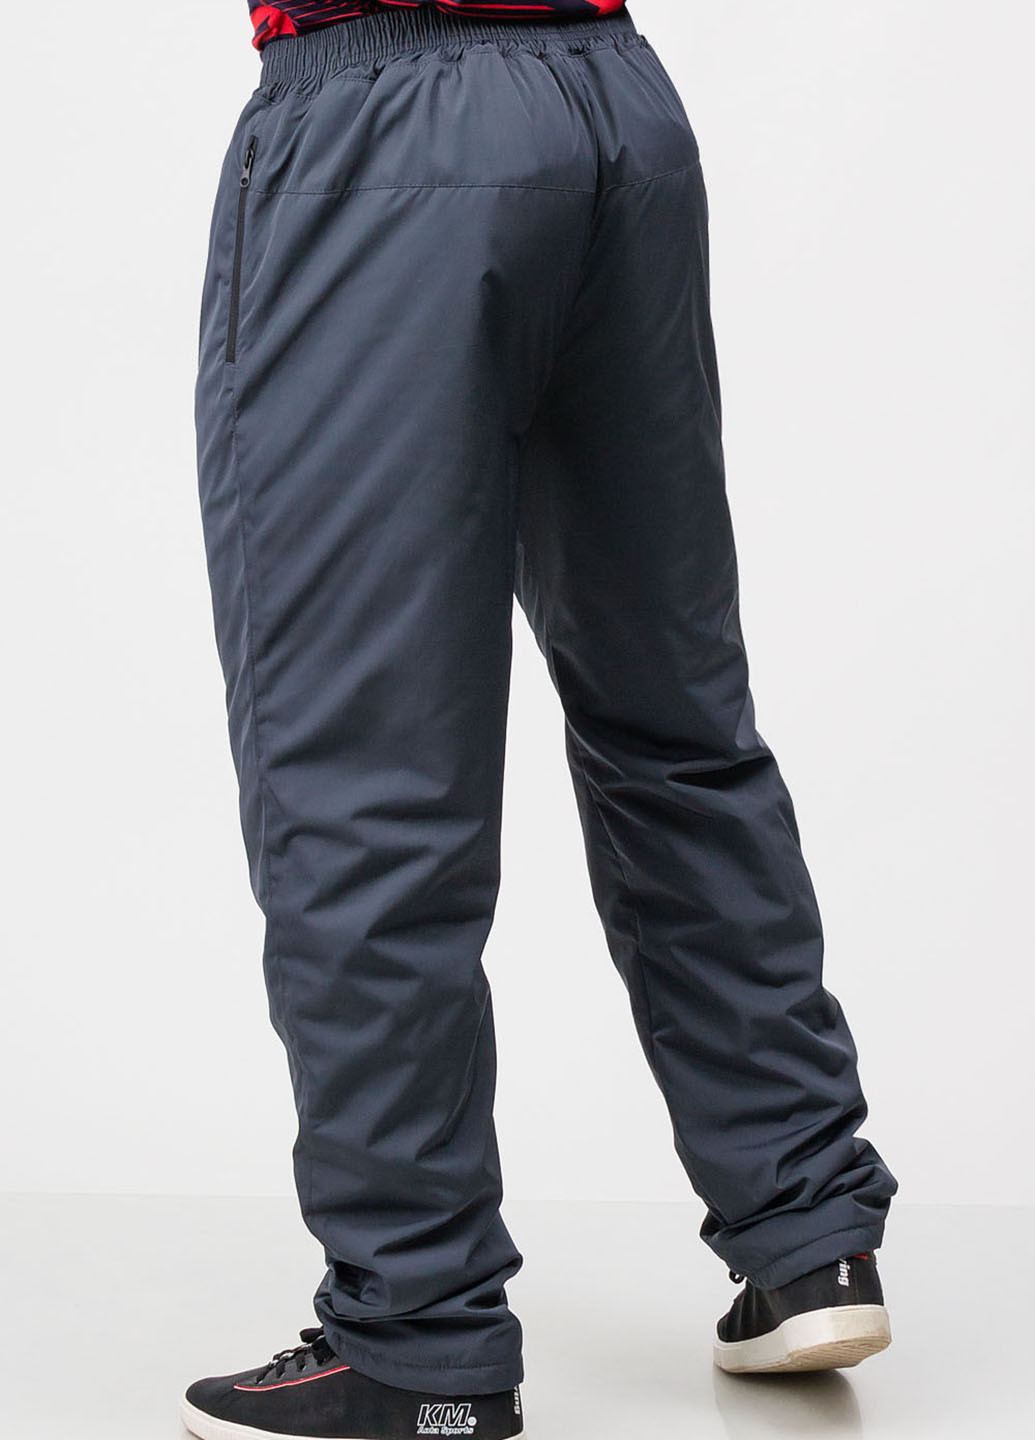 Темно-серые спортивные зимние прямые брюки SA-sport